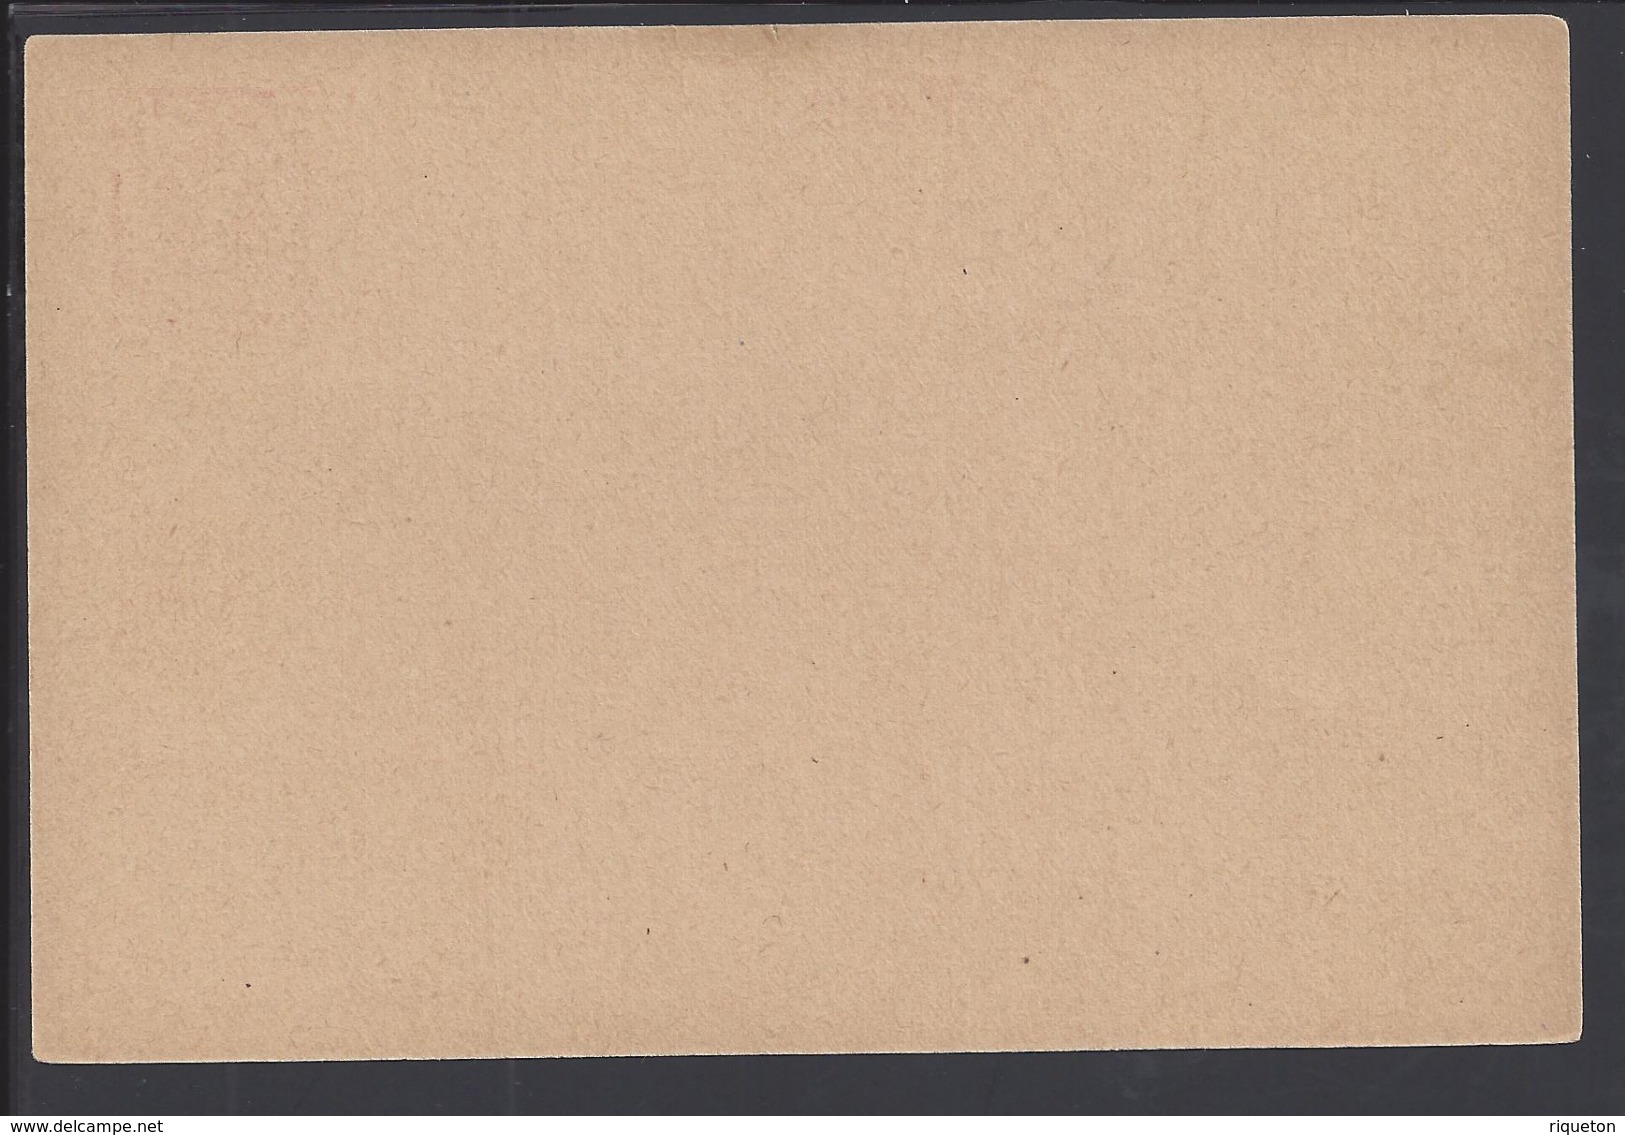 DANTZIG - 1922 - Carte Entier Postal Neuve 80 P Surchargé 3 M - B/TB - - Ganzsachen